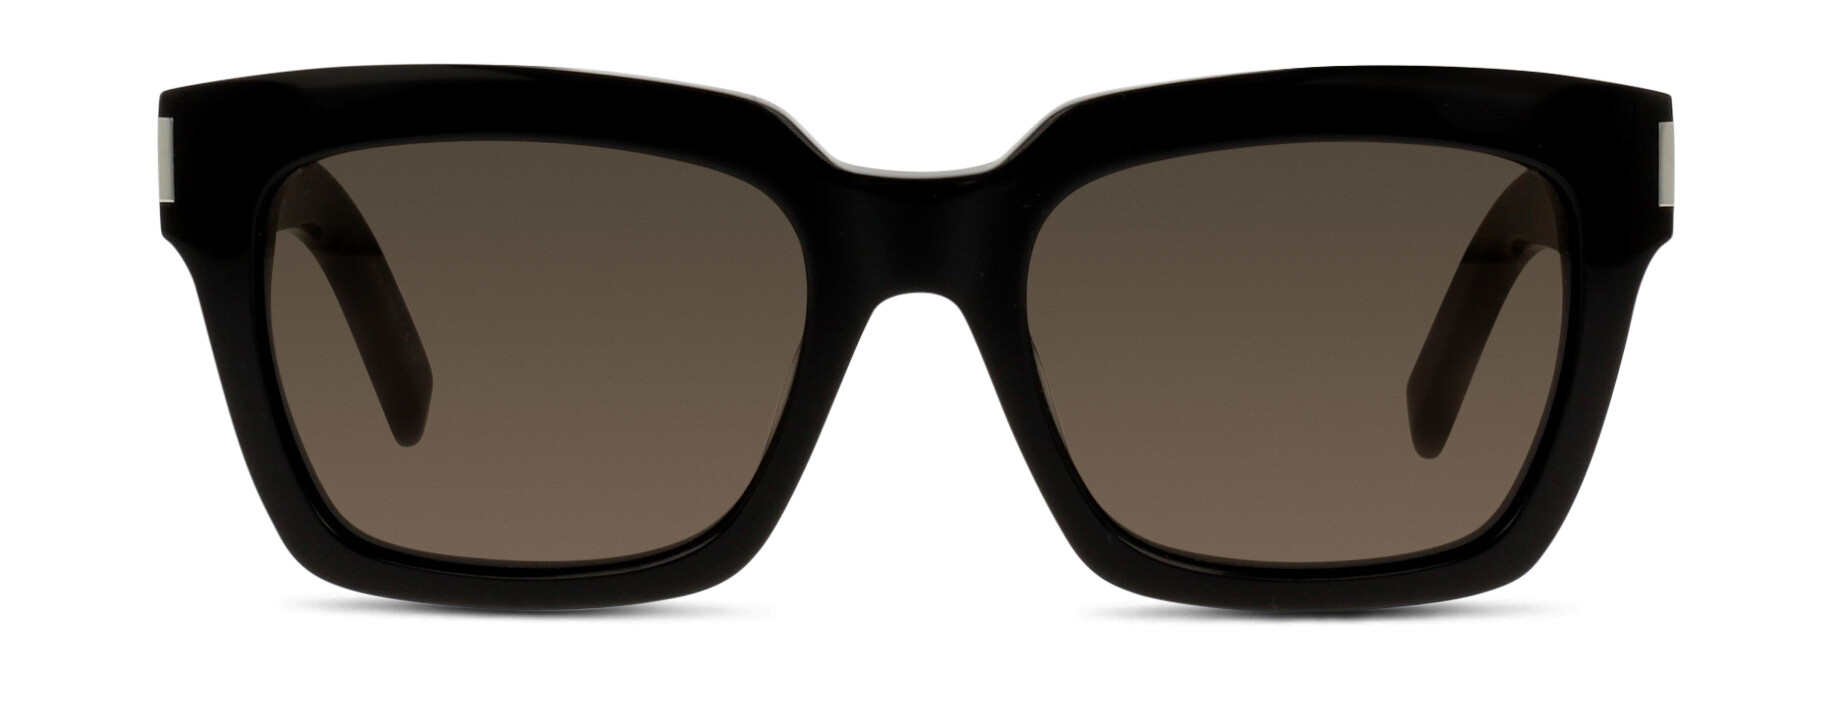 [products.image.front] Saint Laurent Bold 1 002 Sonnenbrille